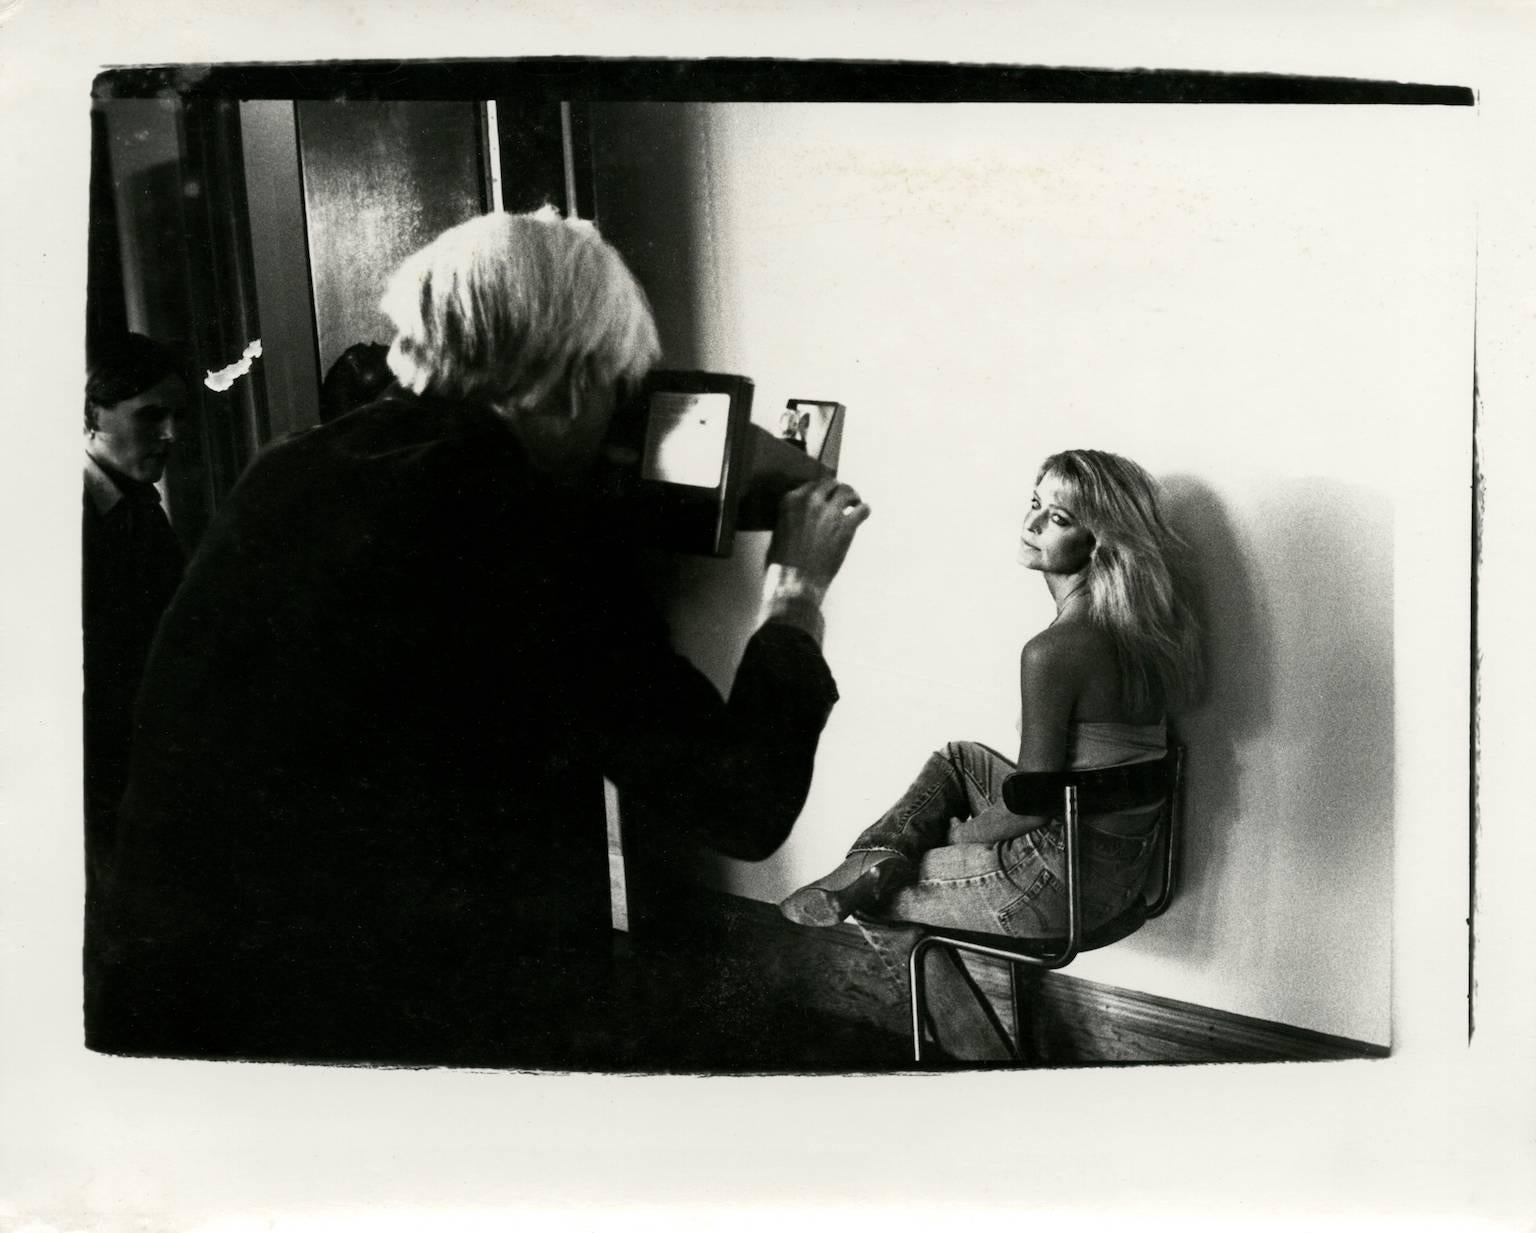 Farrah Fawcett était une actrice et mannequin américaine, surtout connue pour son rôle dans Charlie's Angels et sa coiffure à plumes emblématique, qui est devenue une mode dans les années 1970. 

Dimensions de l'image : 8 x 10 pouces.
Dimensions